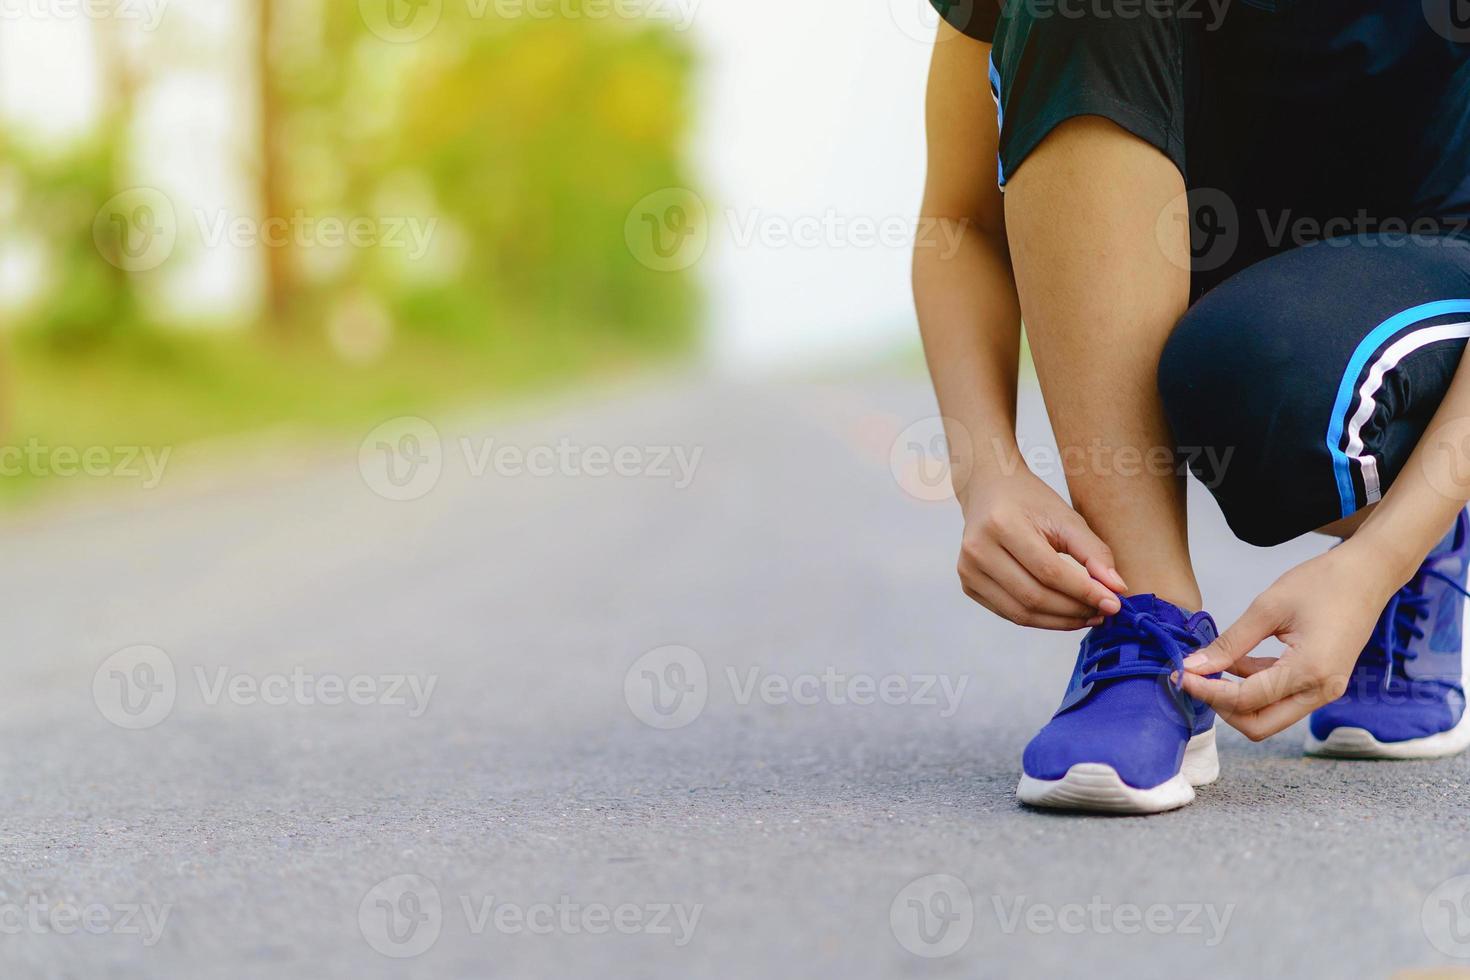 garota correndo experimentando tênis de corrida se preparando para correr foto